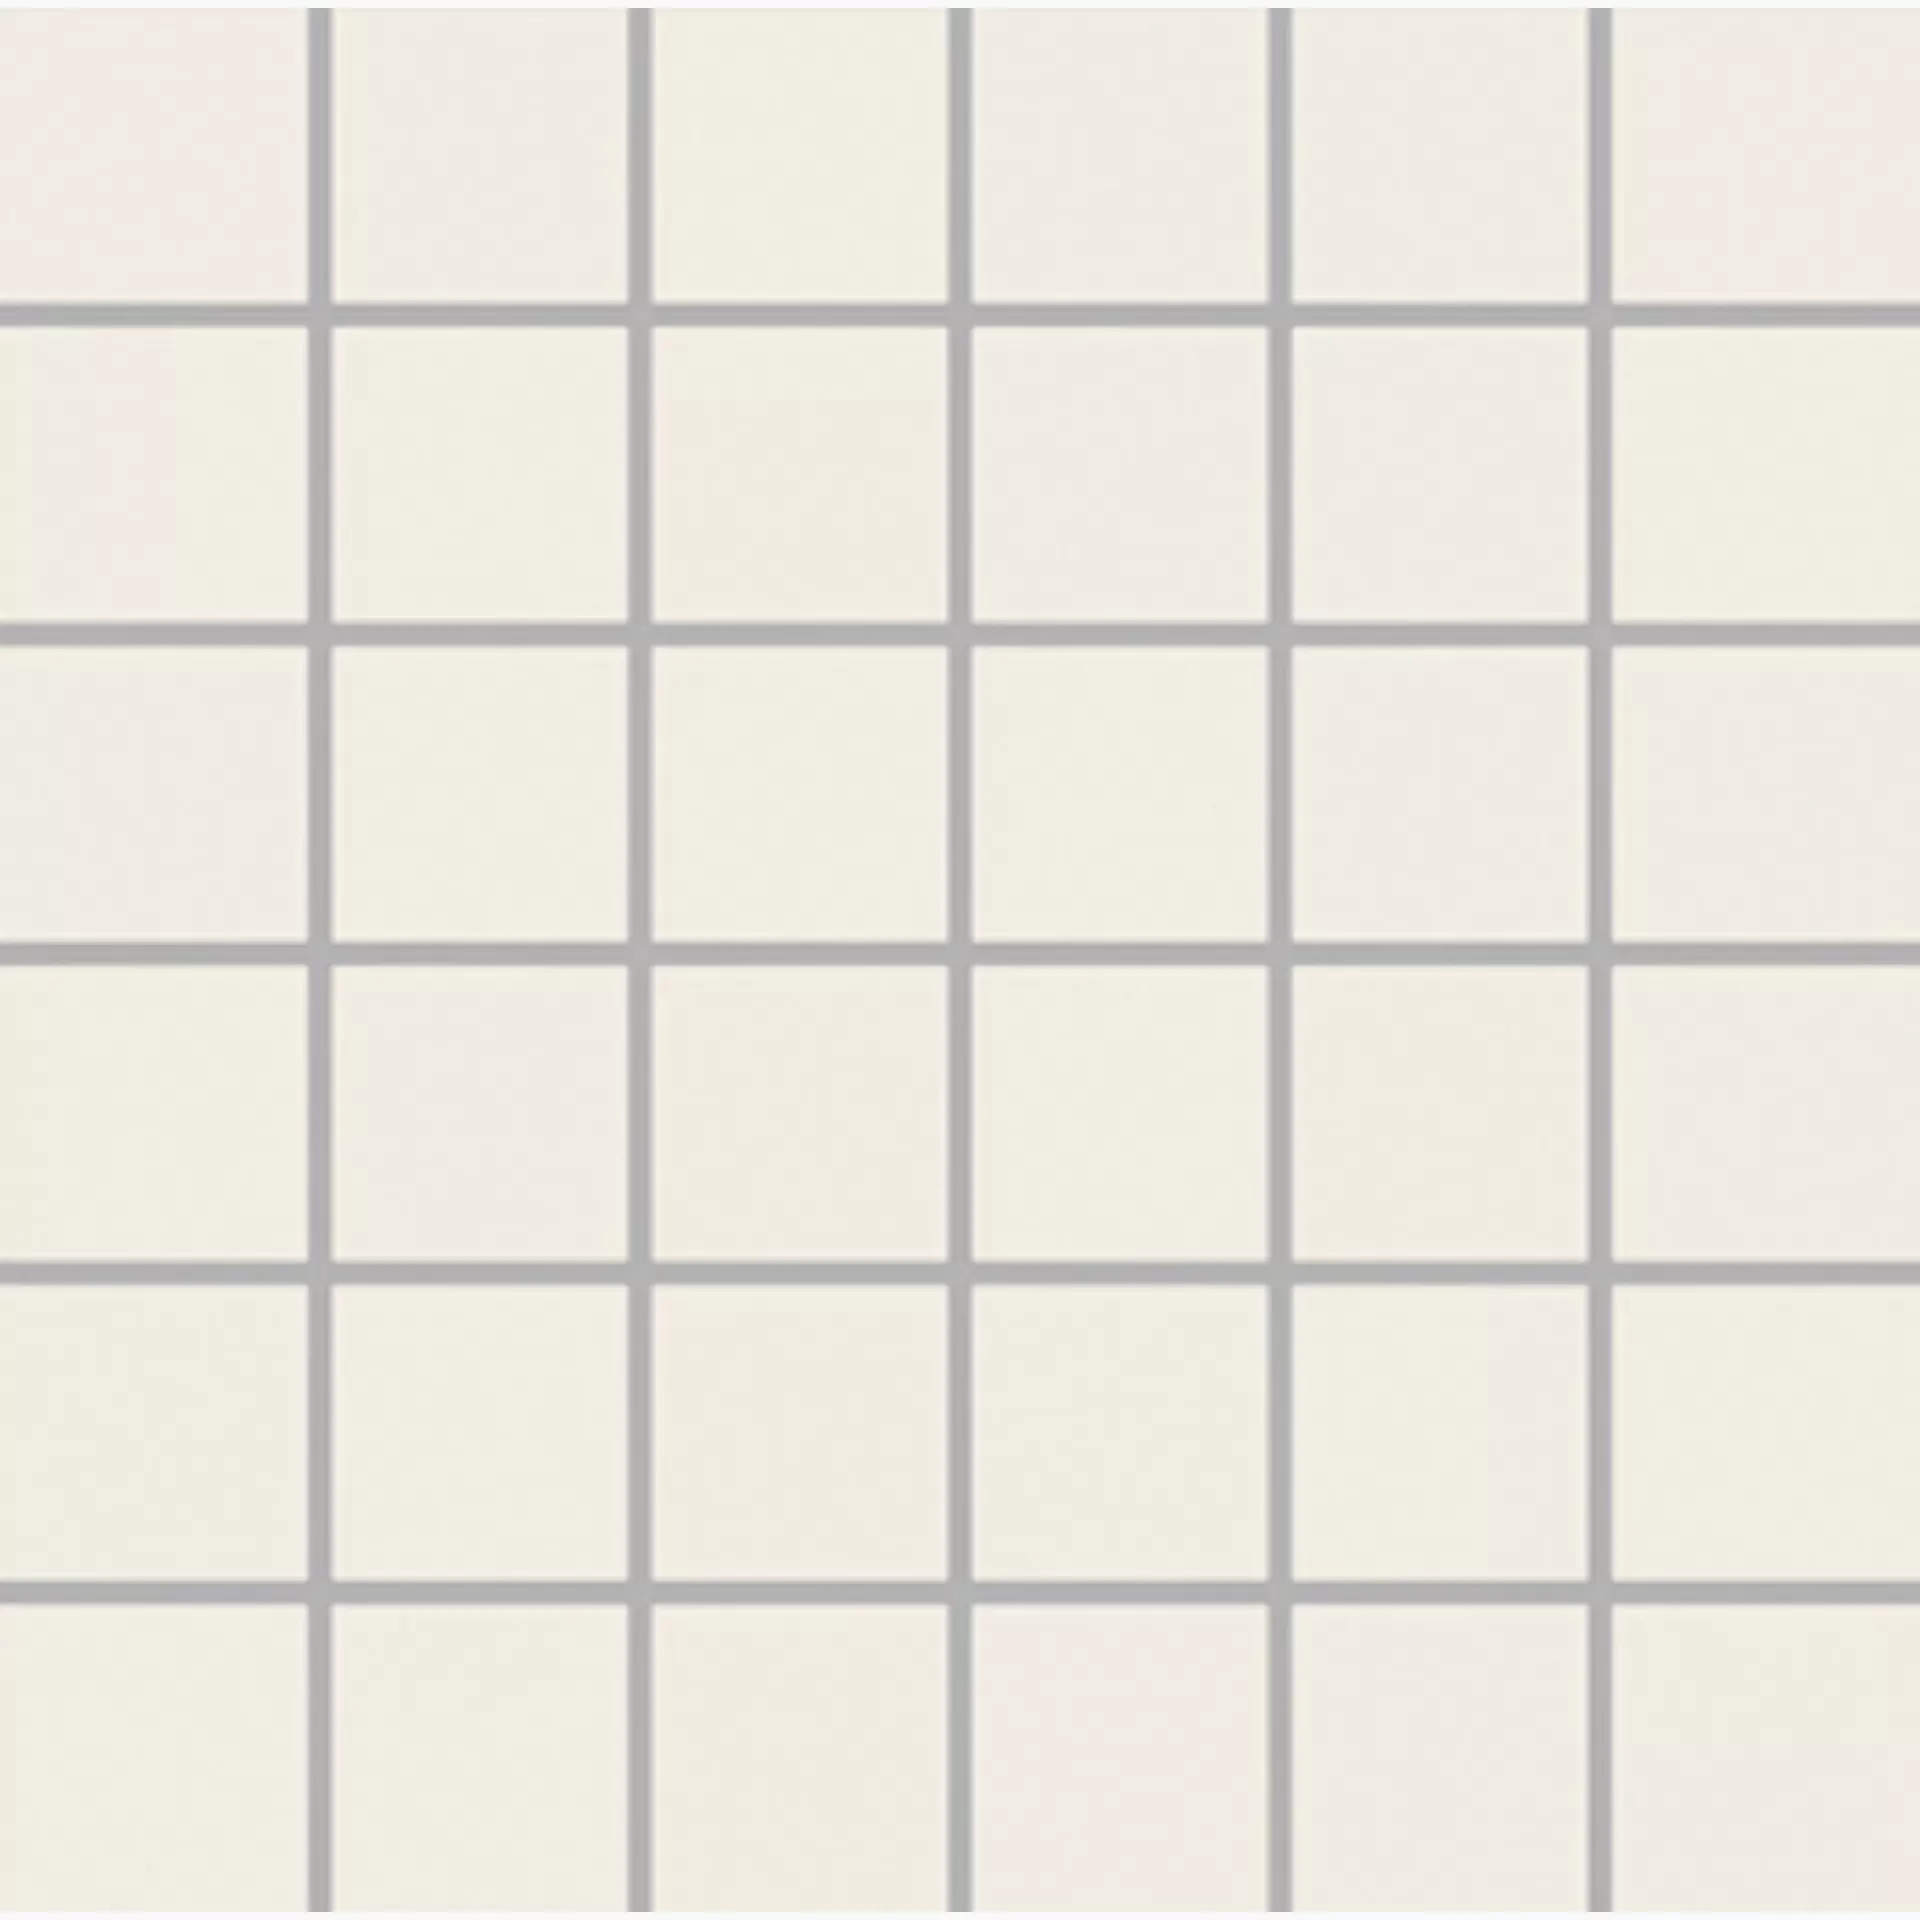 Wandfliese,Bodenfliese Villeroy & Boch Unit One White Matt White 3709-UT01 matt 5x5cm Mosaik (5x5) 6mm